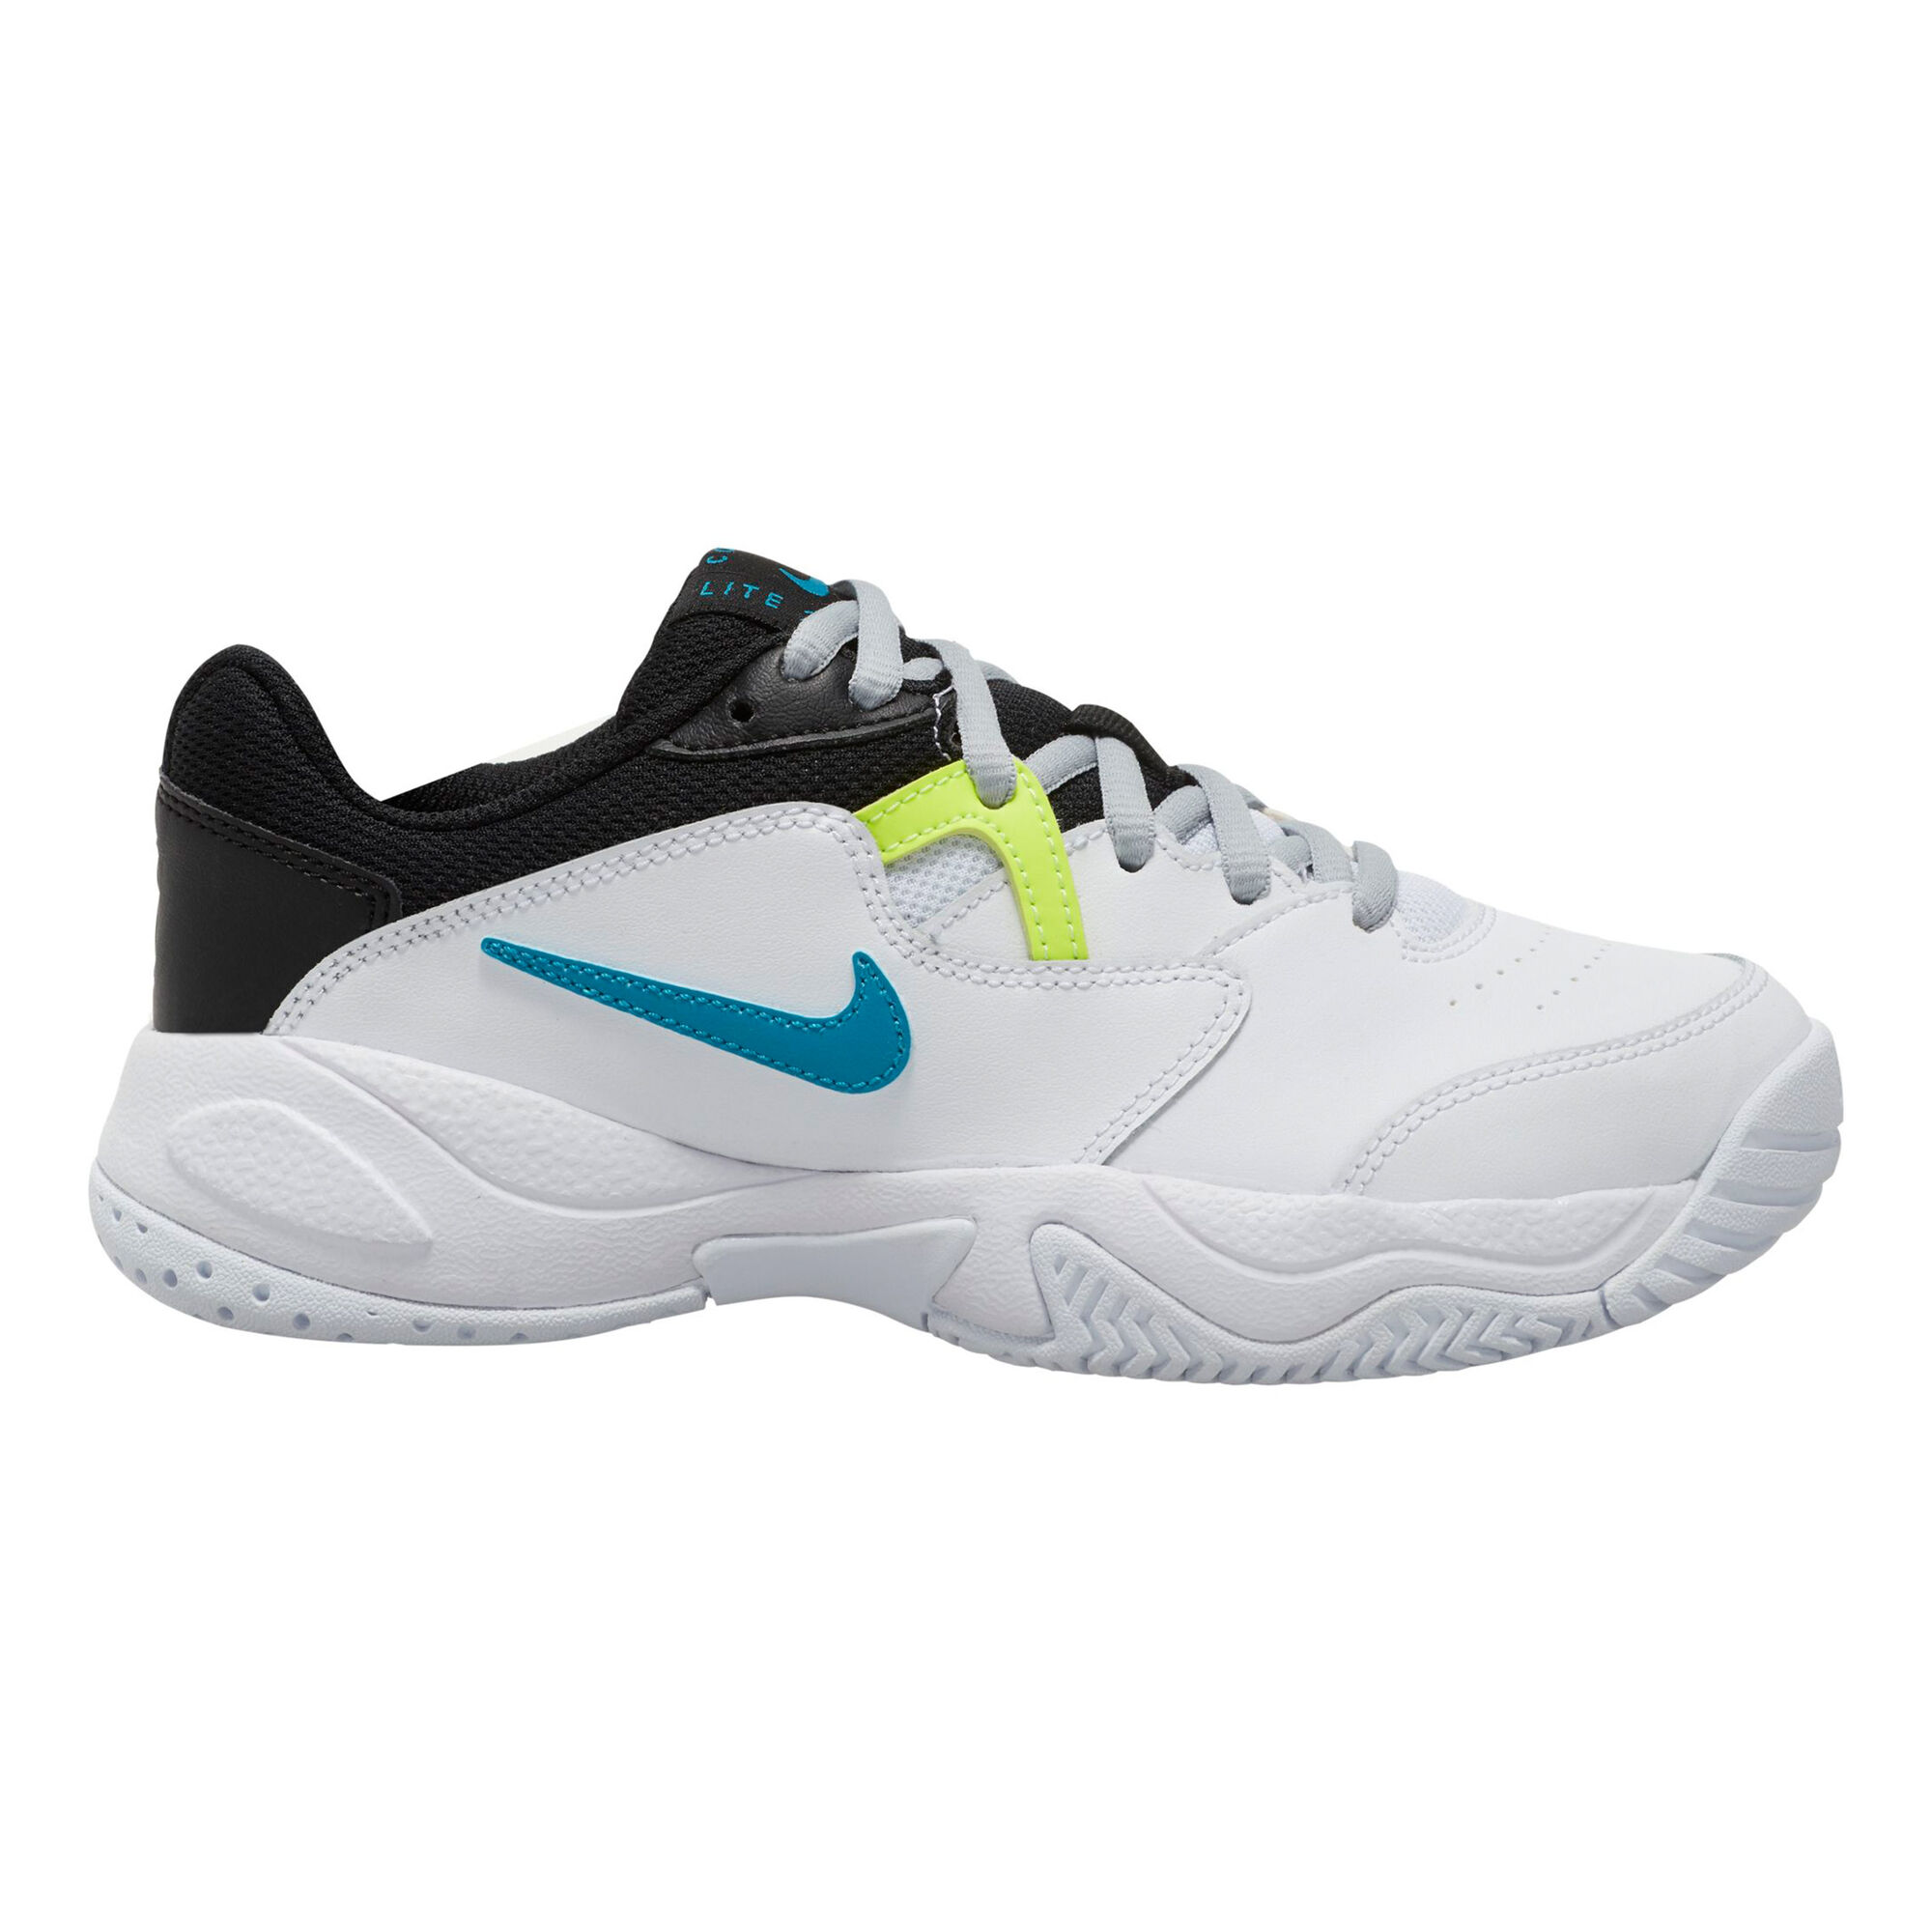 bodem kleding stof restaurant Nike Court Lite 2 All Court Shoe Kids - White, Black online | Padel-Point